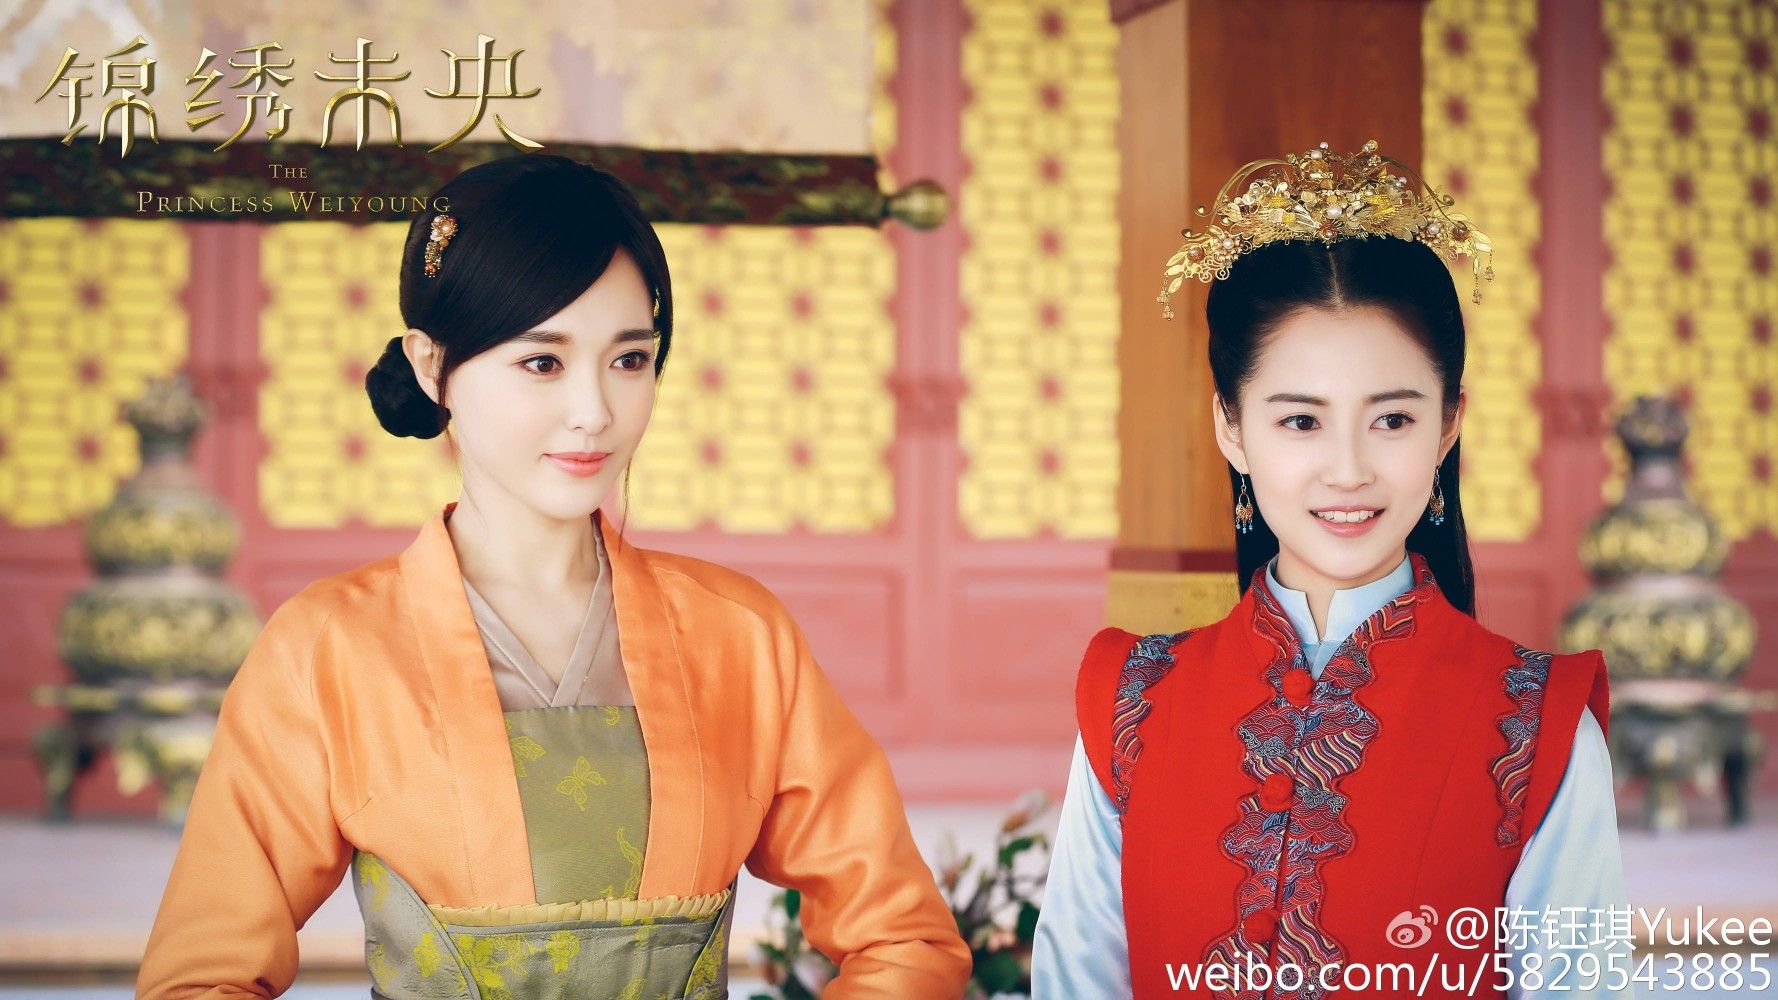 Phim Đường Yên: Cẩm tú Vị Ương - The Princess Wei Young (2016)